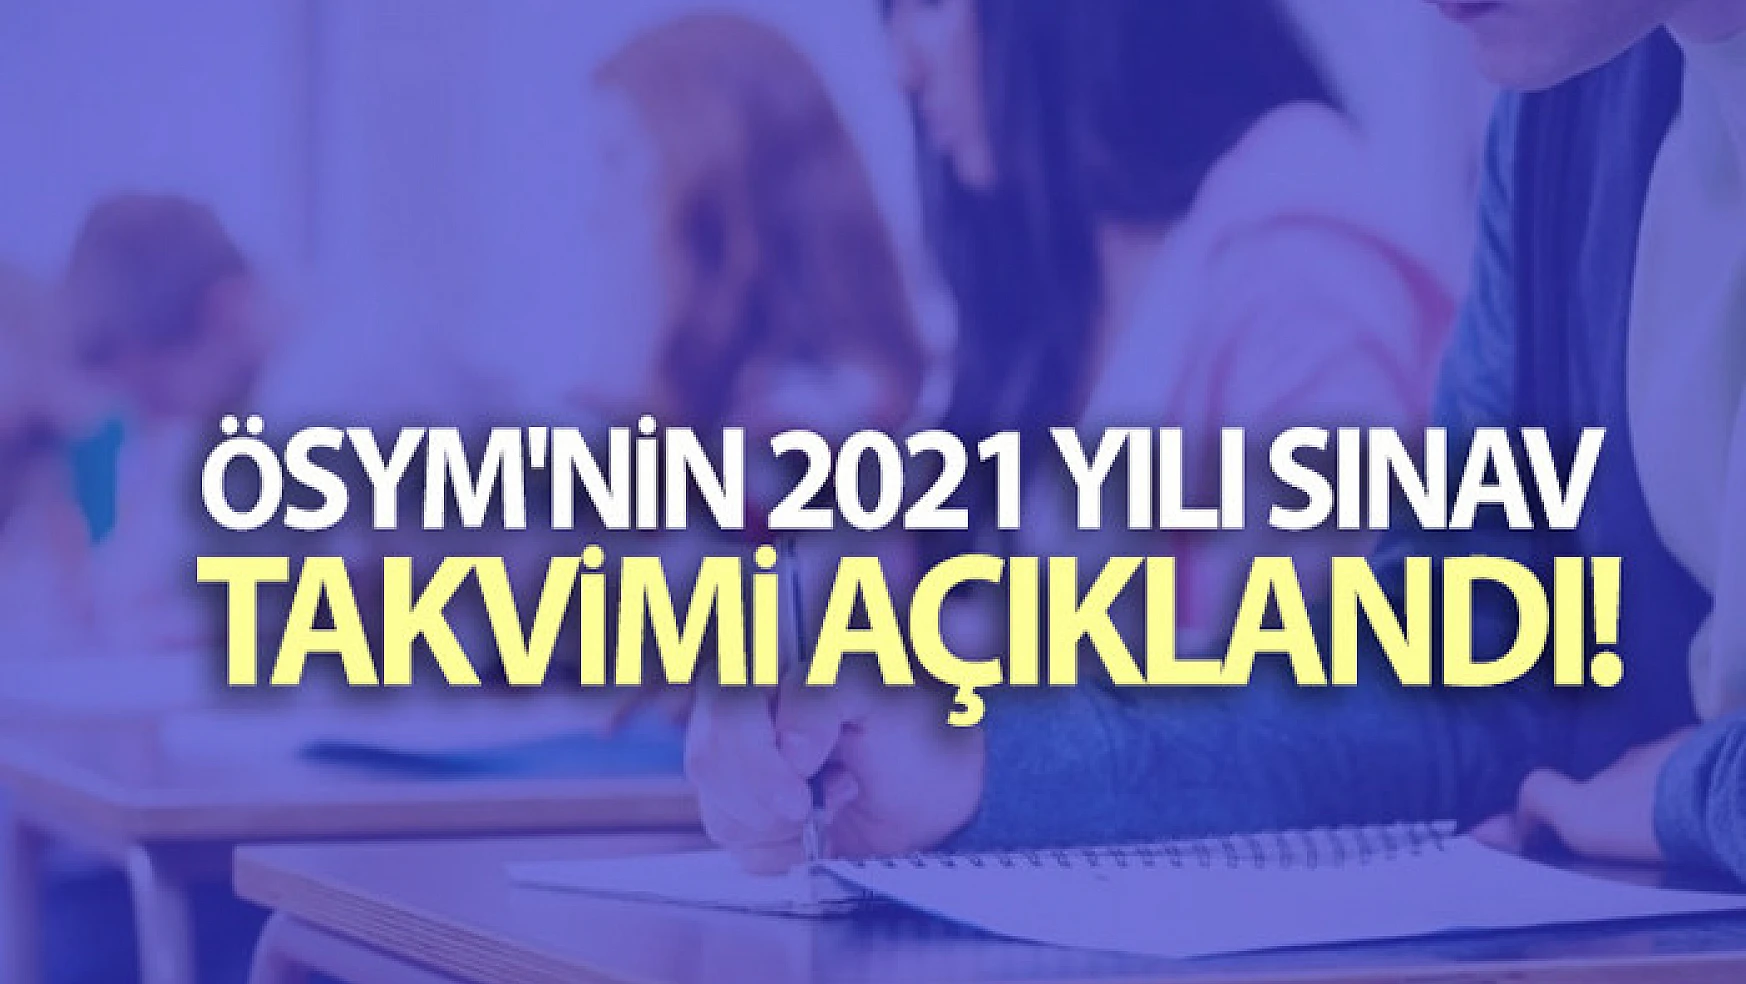 ÖSYM Başkanı Aygün, 2021 yılı sınav takviminin açıklandığını duyurdu